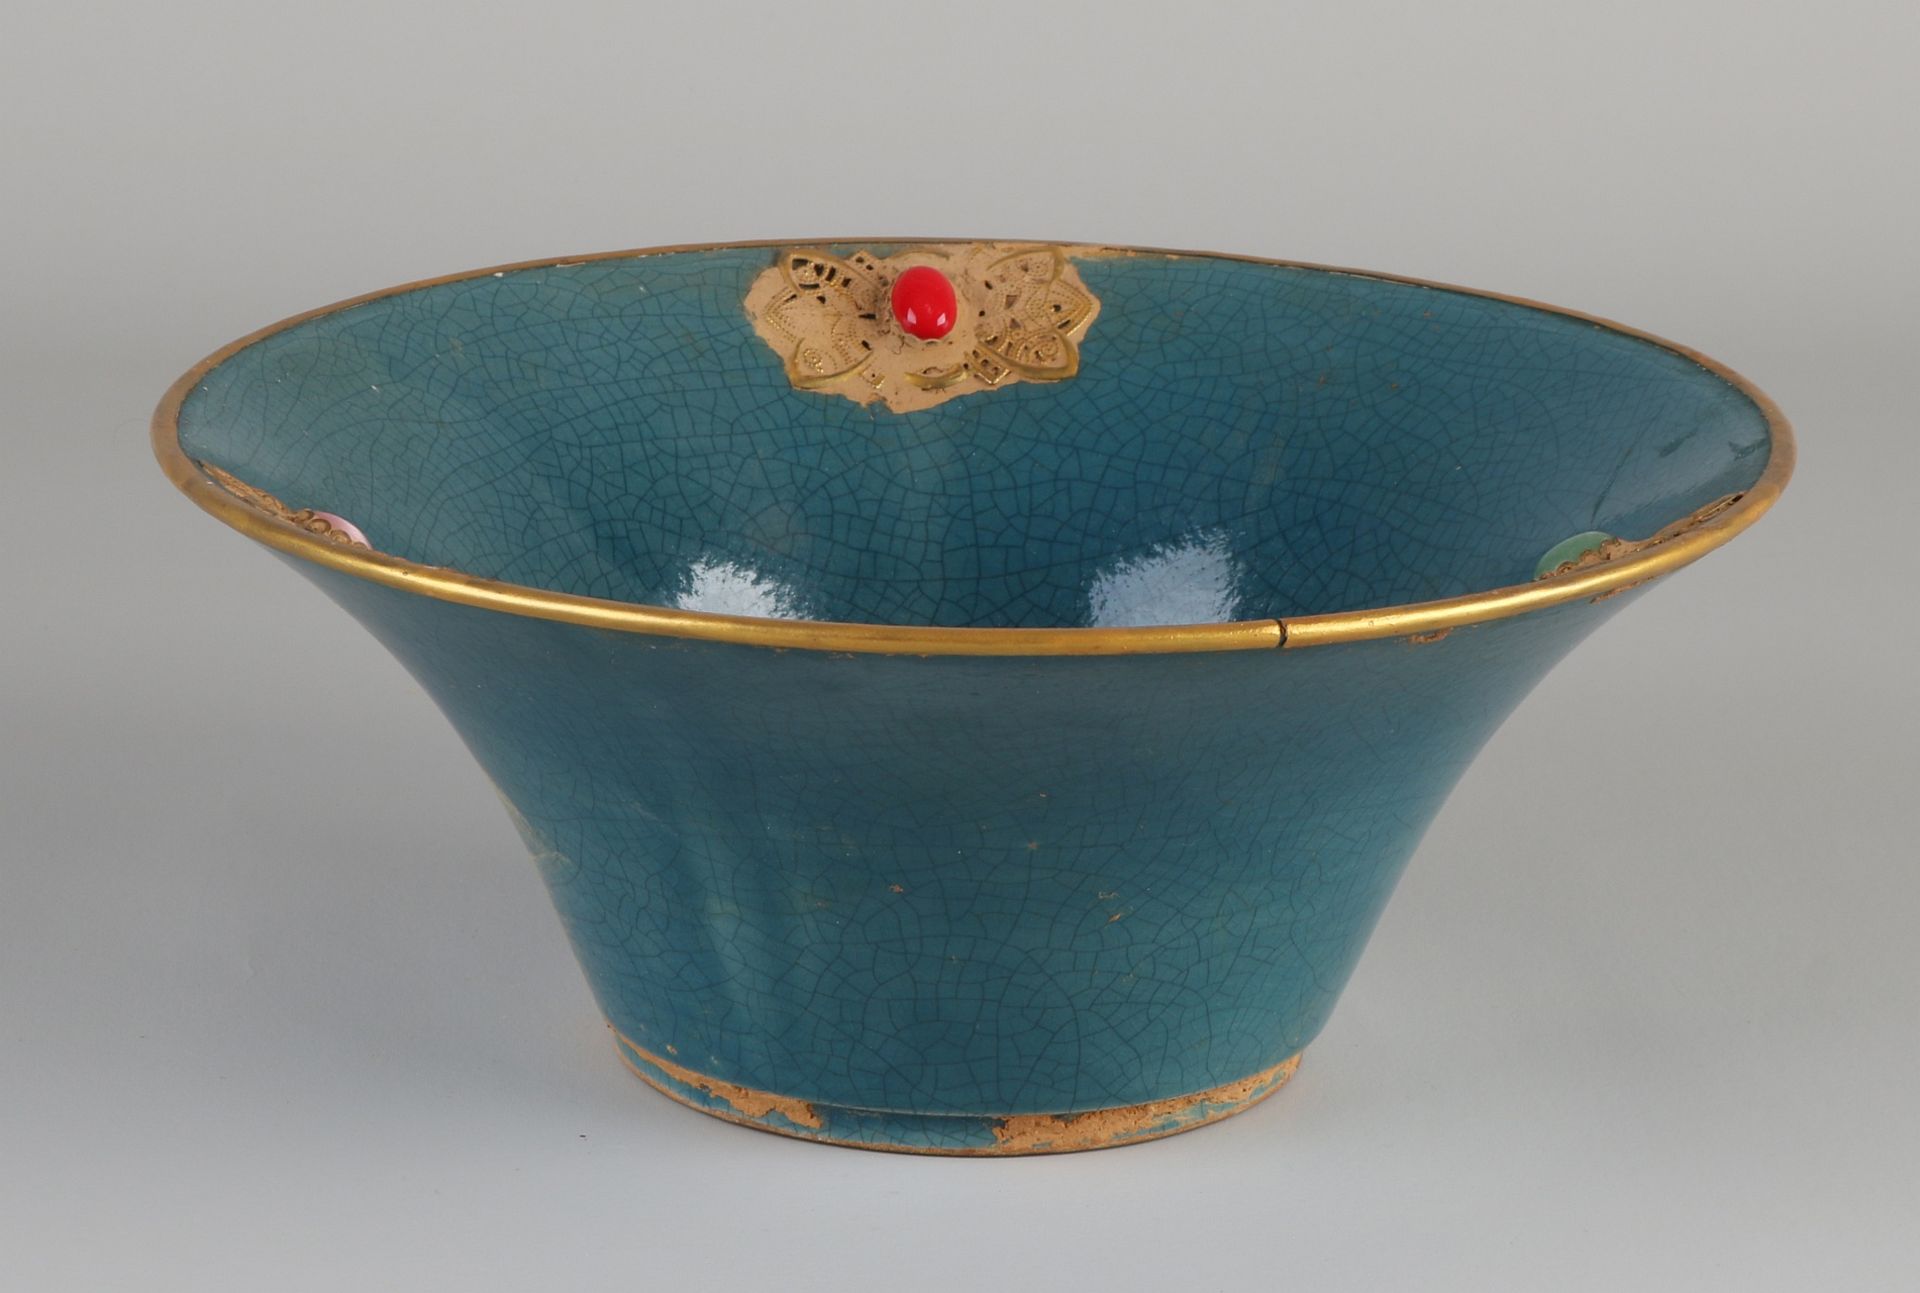 Chinesische Porzellanschale mit blauer Glasur und Goldrelief + Steinen. Abmessungen: H 9 x Ø 22 c - Image 2 of 4